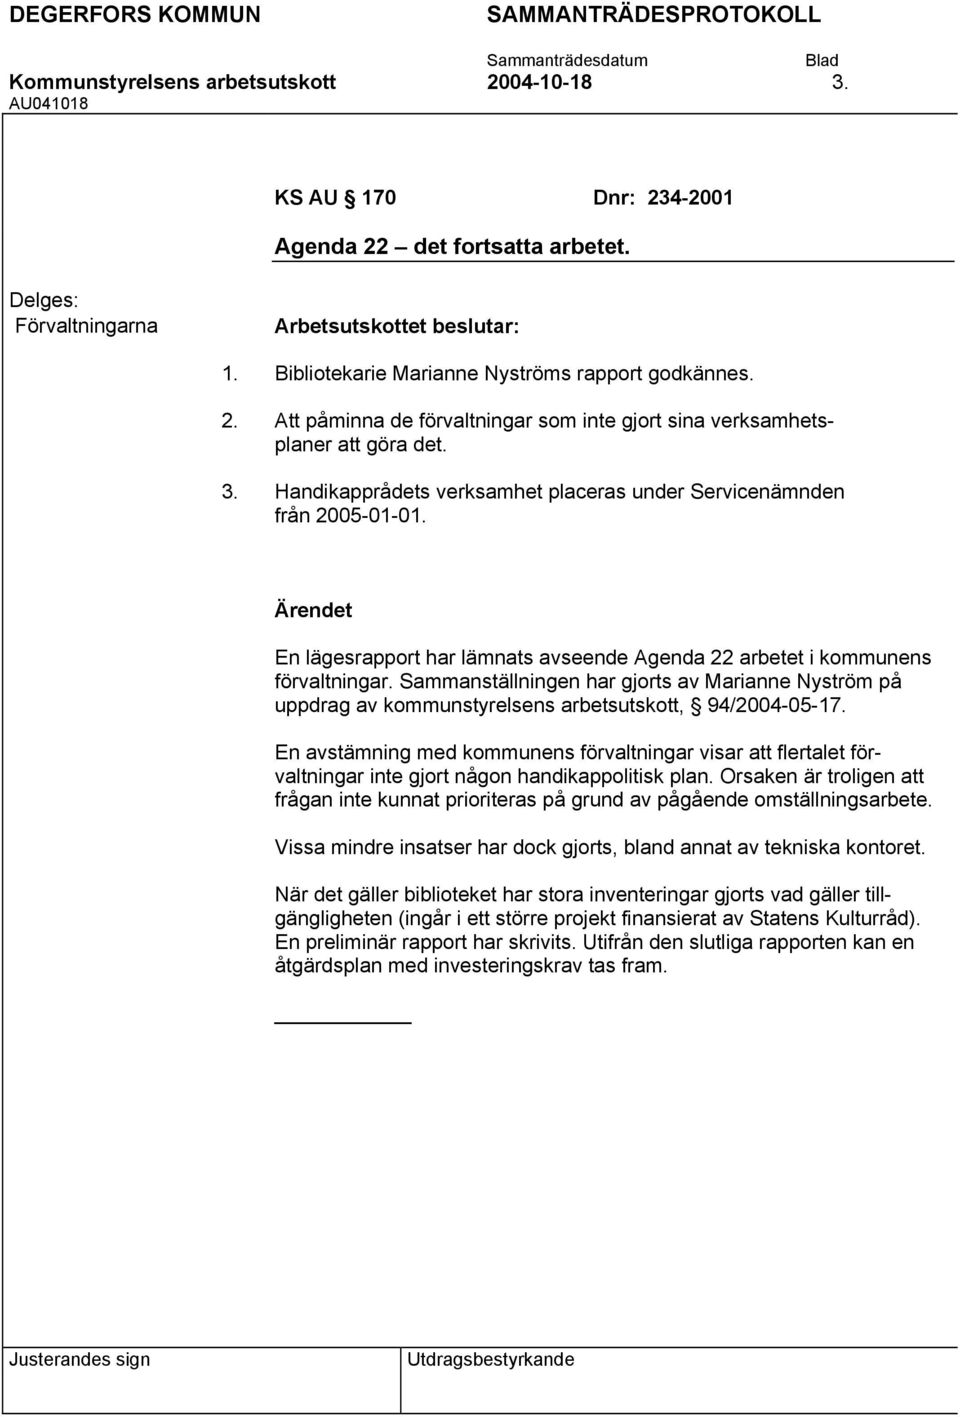 En lägesrapport har lämnats avseende Agenda 22 arbetet i kommunens förvaltningar. Sammanställningen har gjorts av Marianne Nyström på uppdrag av kommunstyrelsens arbetsutskott, 94/2004-05-17.